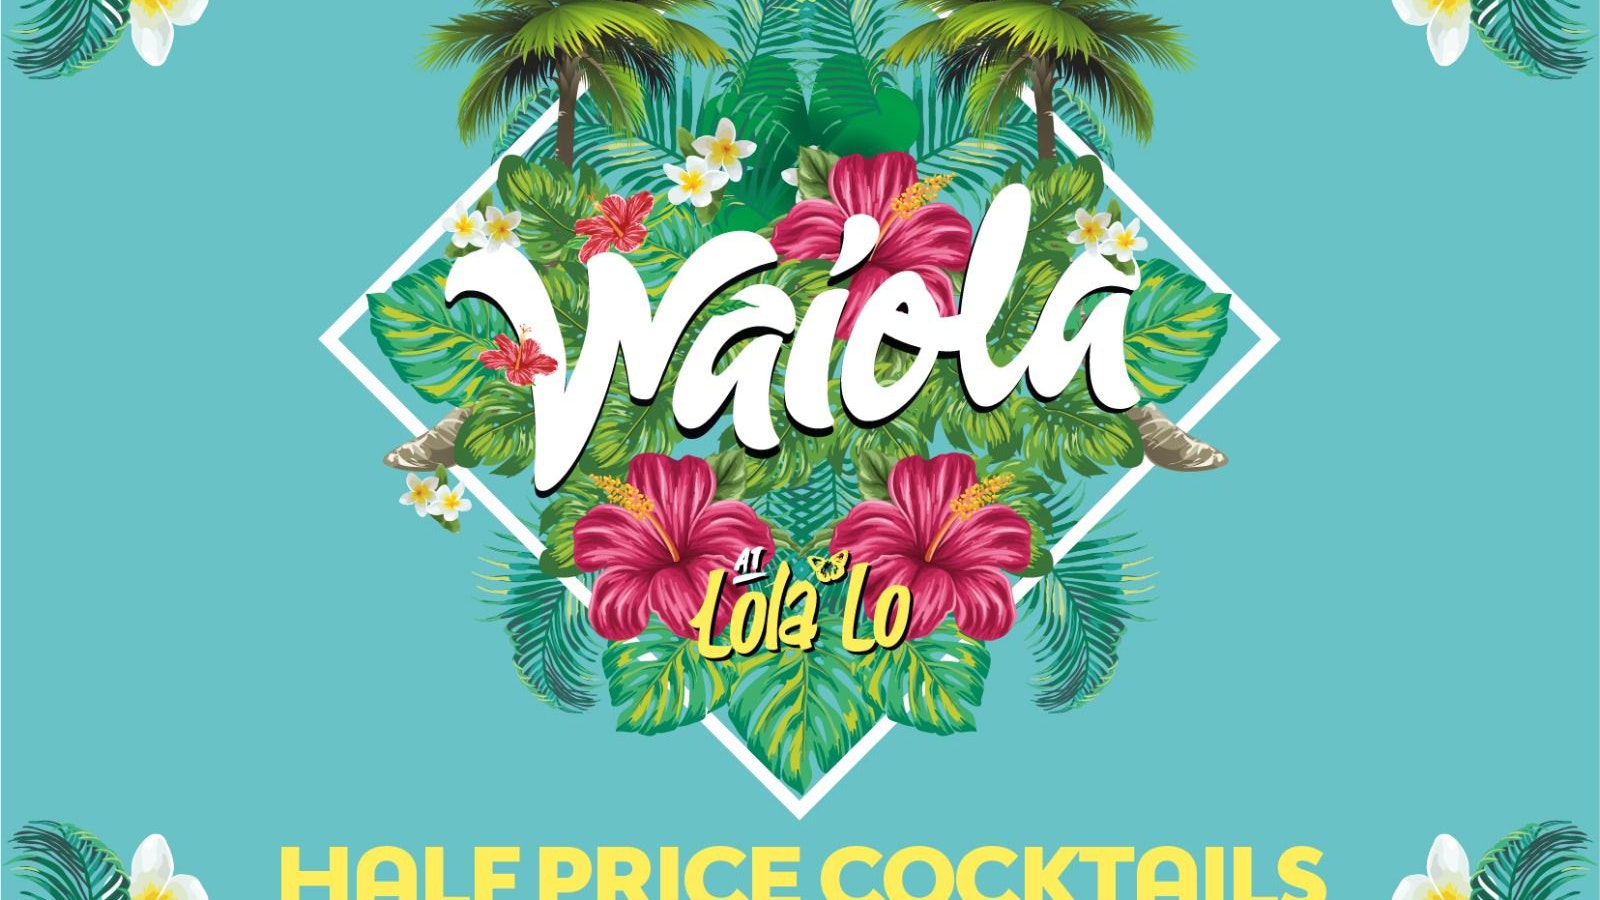 Waiola : Half Price Cocktails Until Midnight🍹